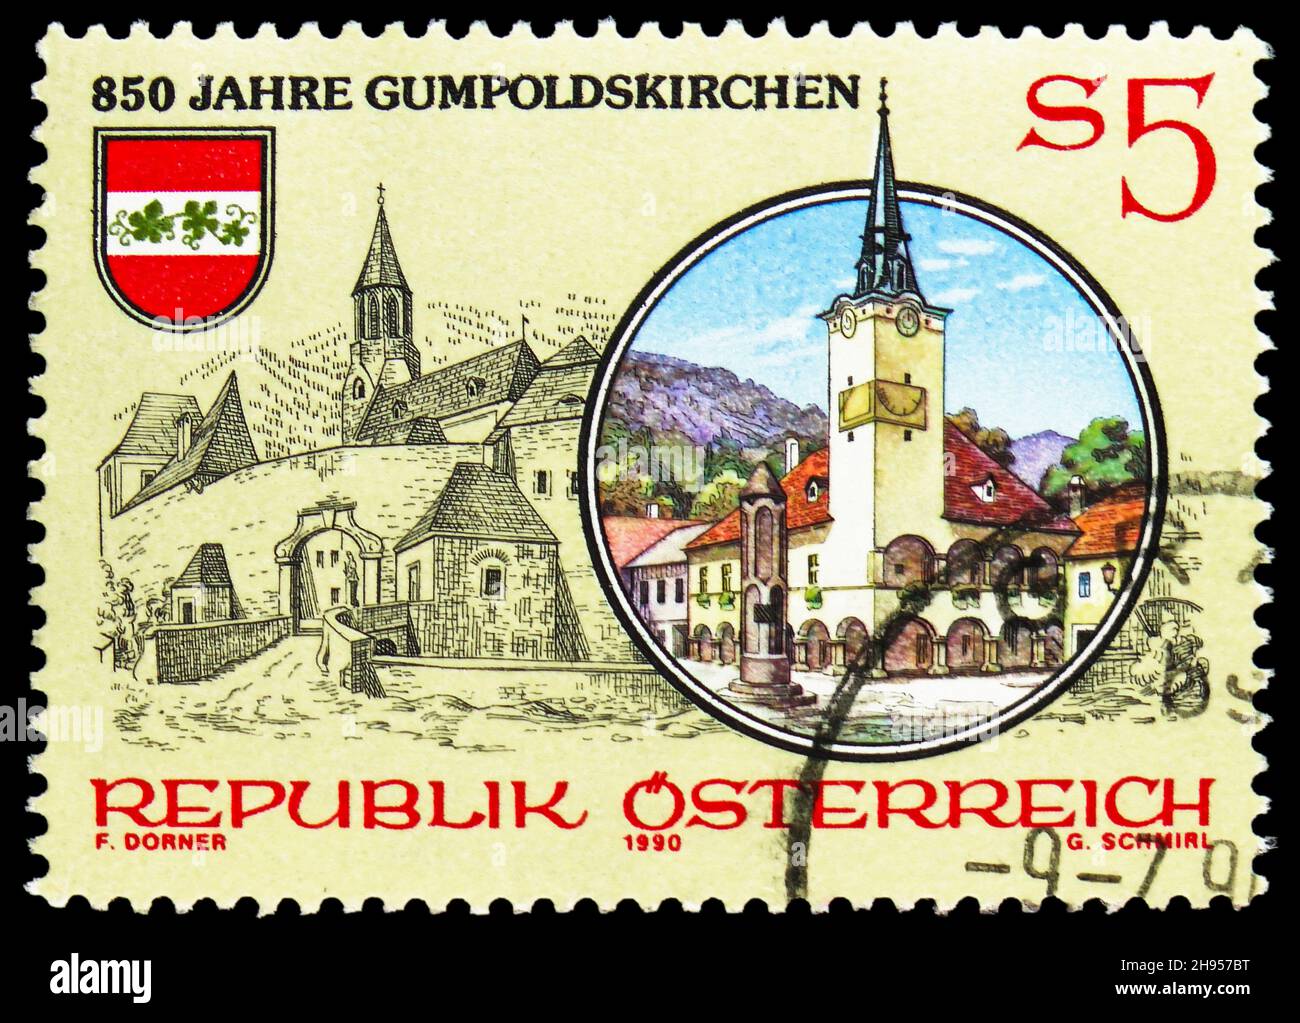 MOSCOU, RUSSIE - 24 OCTOBRE 2021 : le timbre-poste imprimé en Autriche montre le 850ème anniversaire de Gumpoldskirchen (Basse-Autriche), série, vers 1990 Banque D'Images